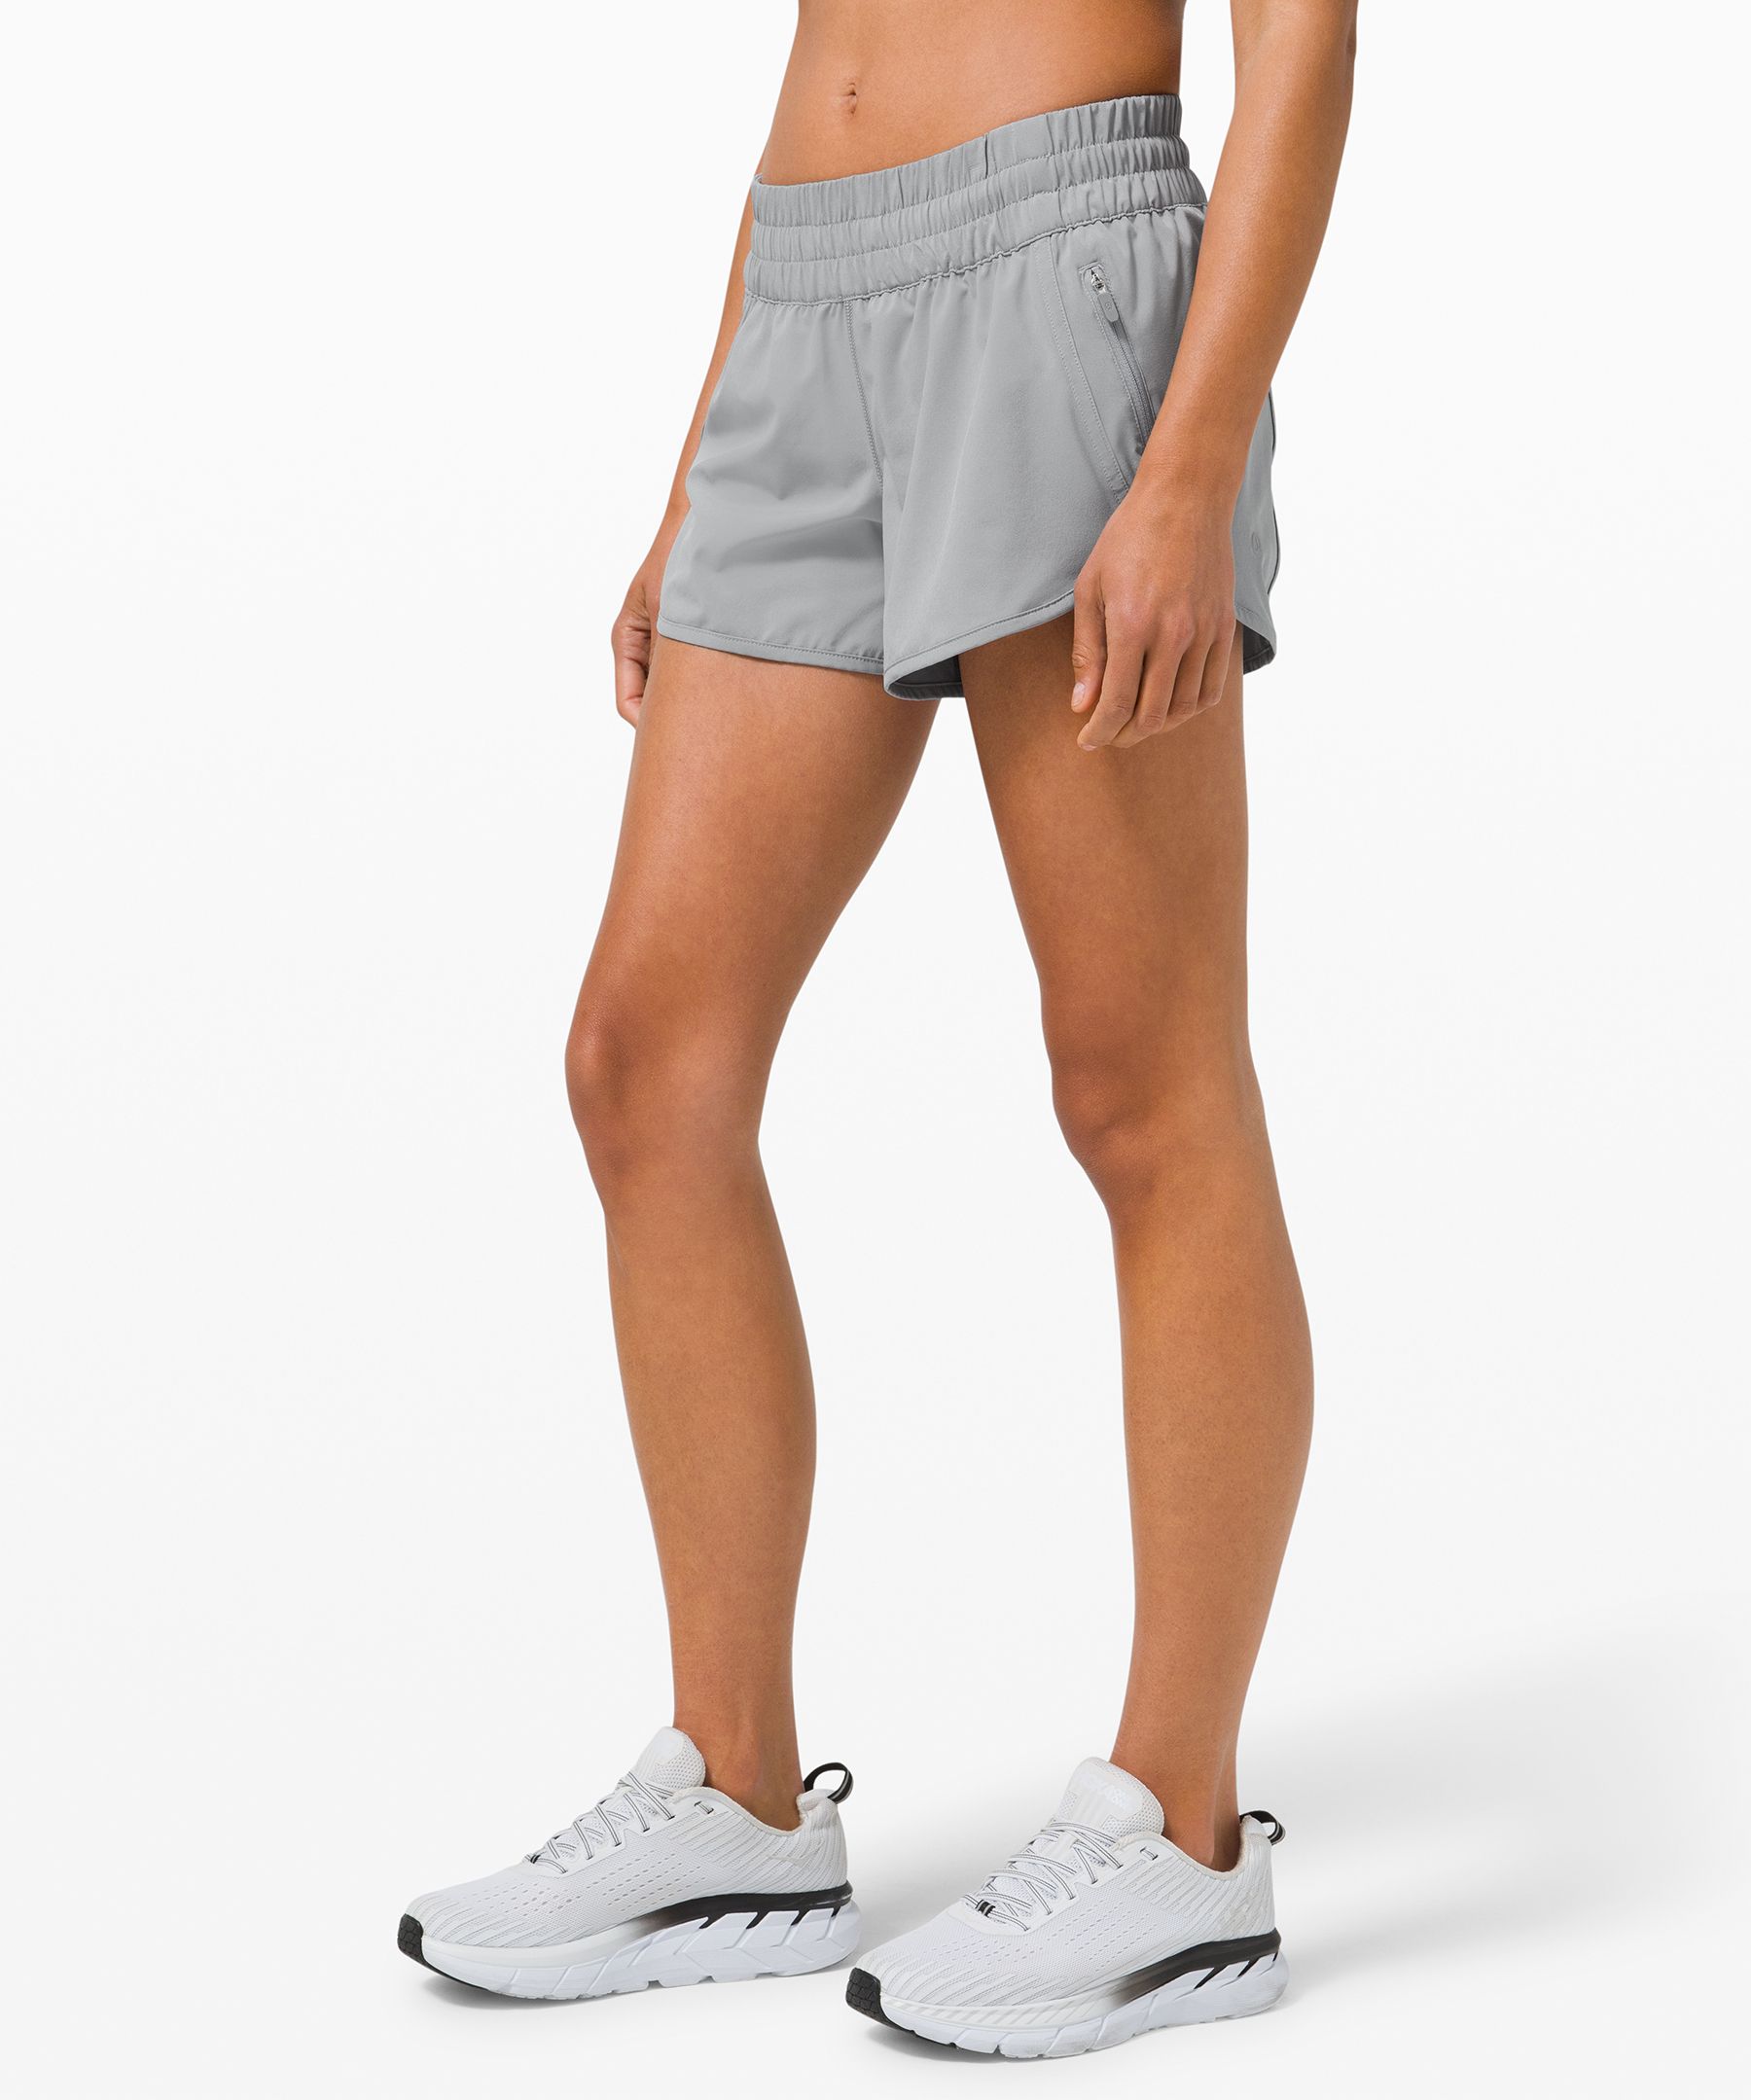 size 0 lululemon shorts